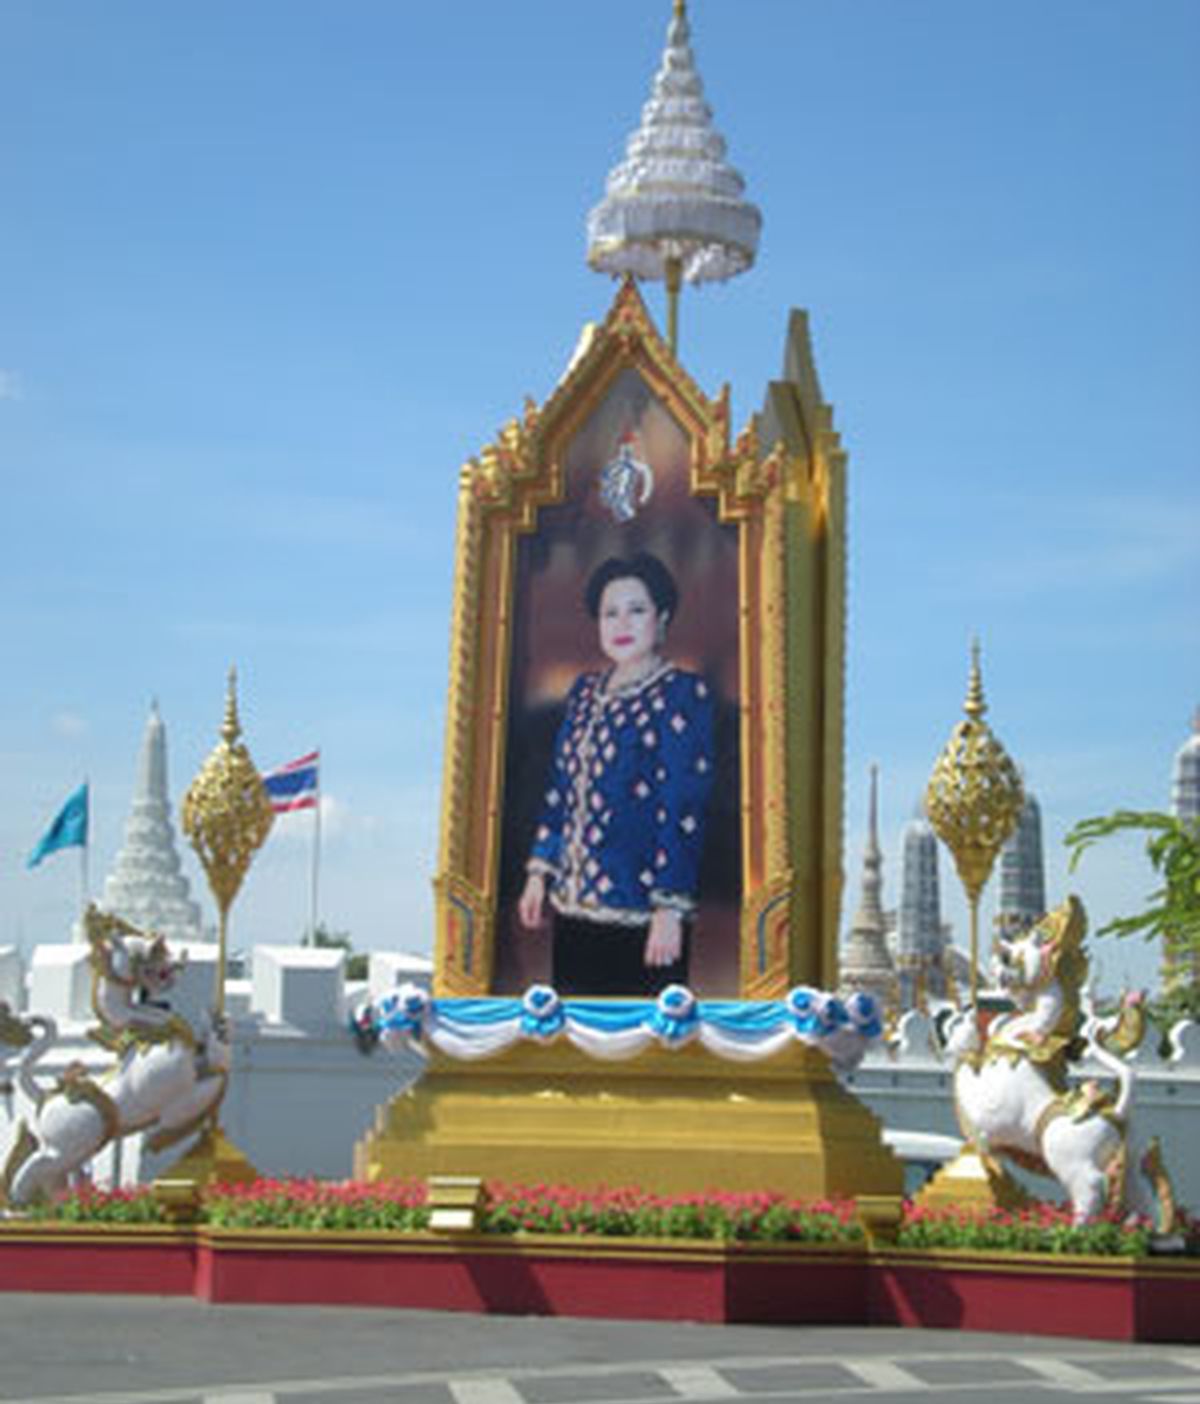 La reina Sirikit está presente en múltiples imágenes a lo largo de todo Bangkok, no así el rey, que pasa a un segundo plano. Foto: RSO.